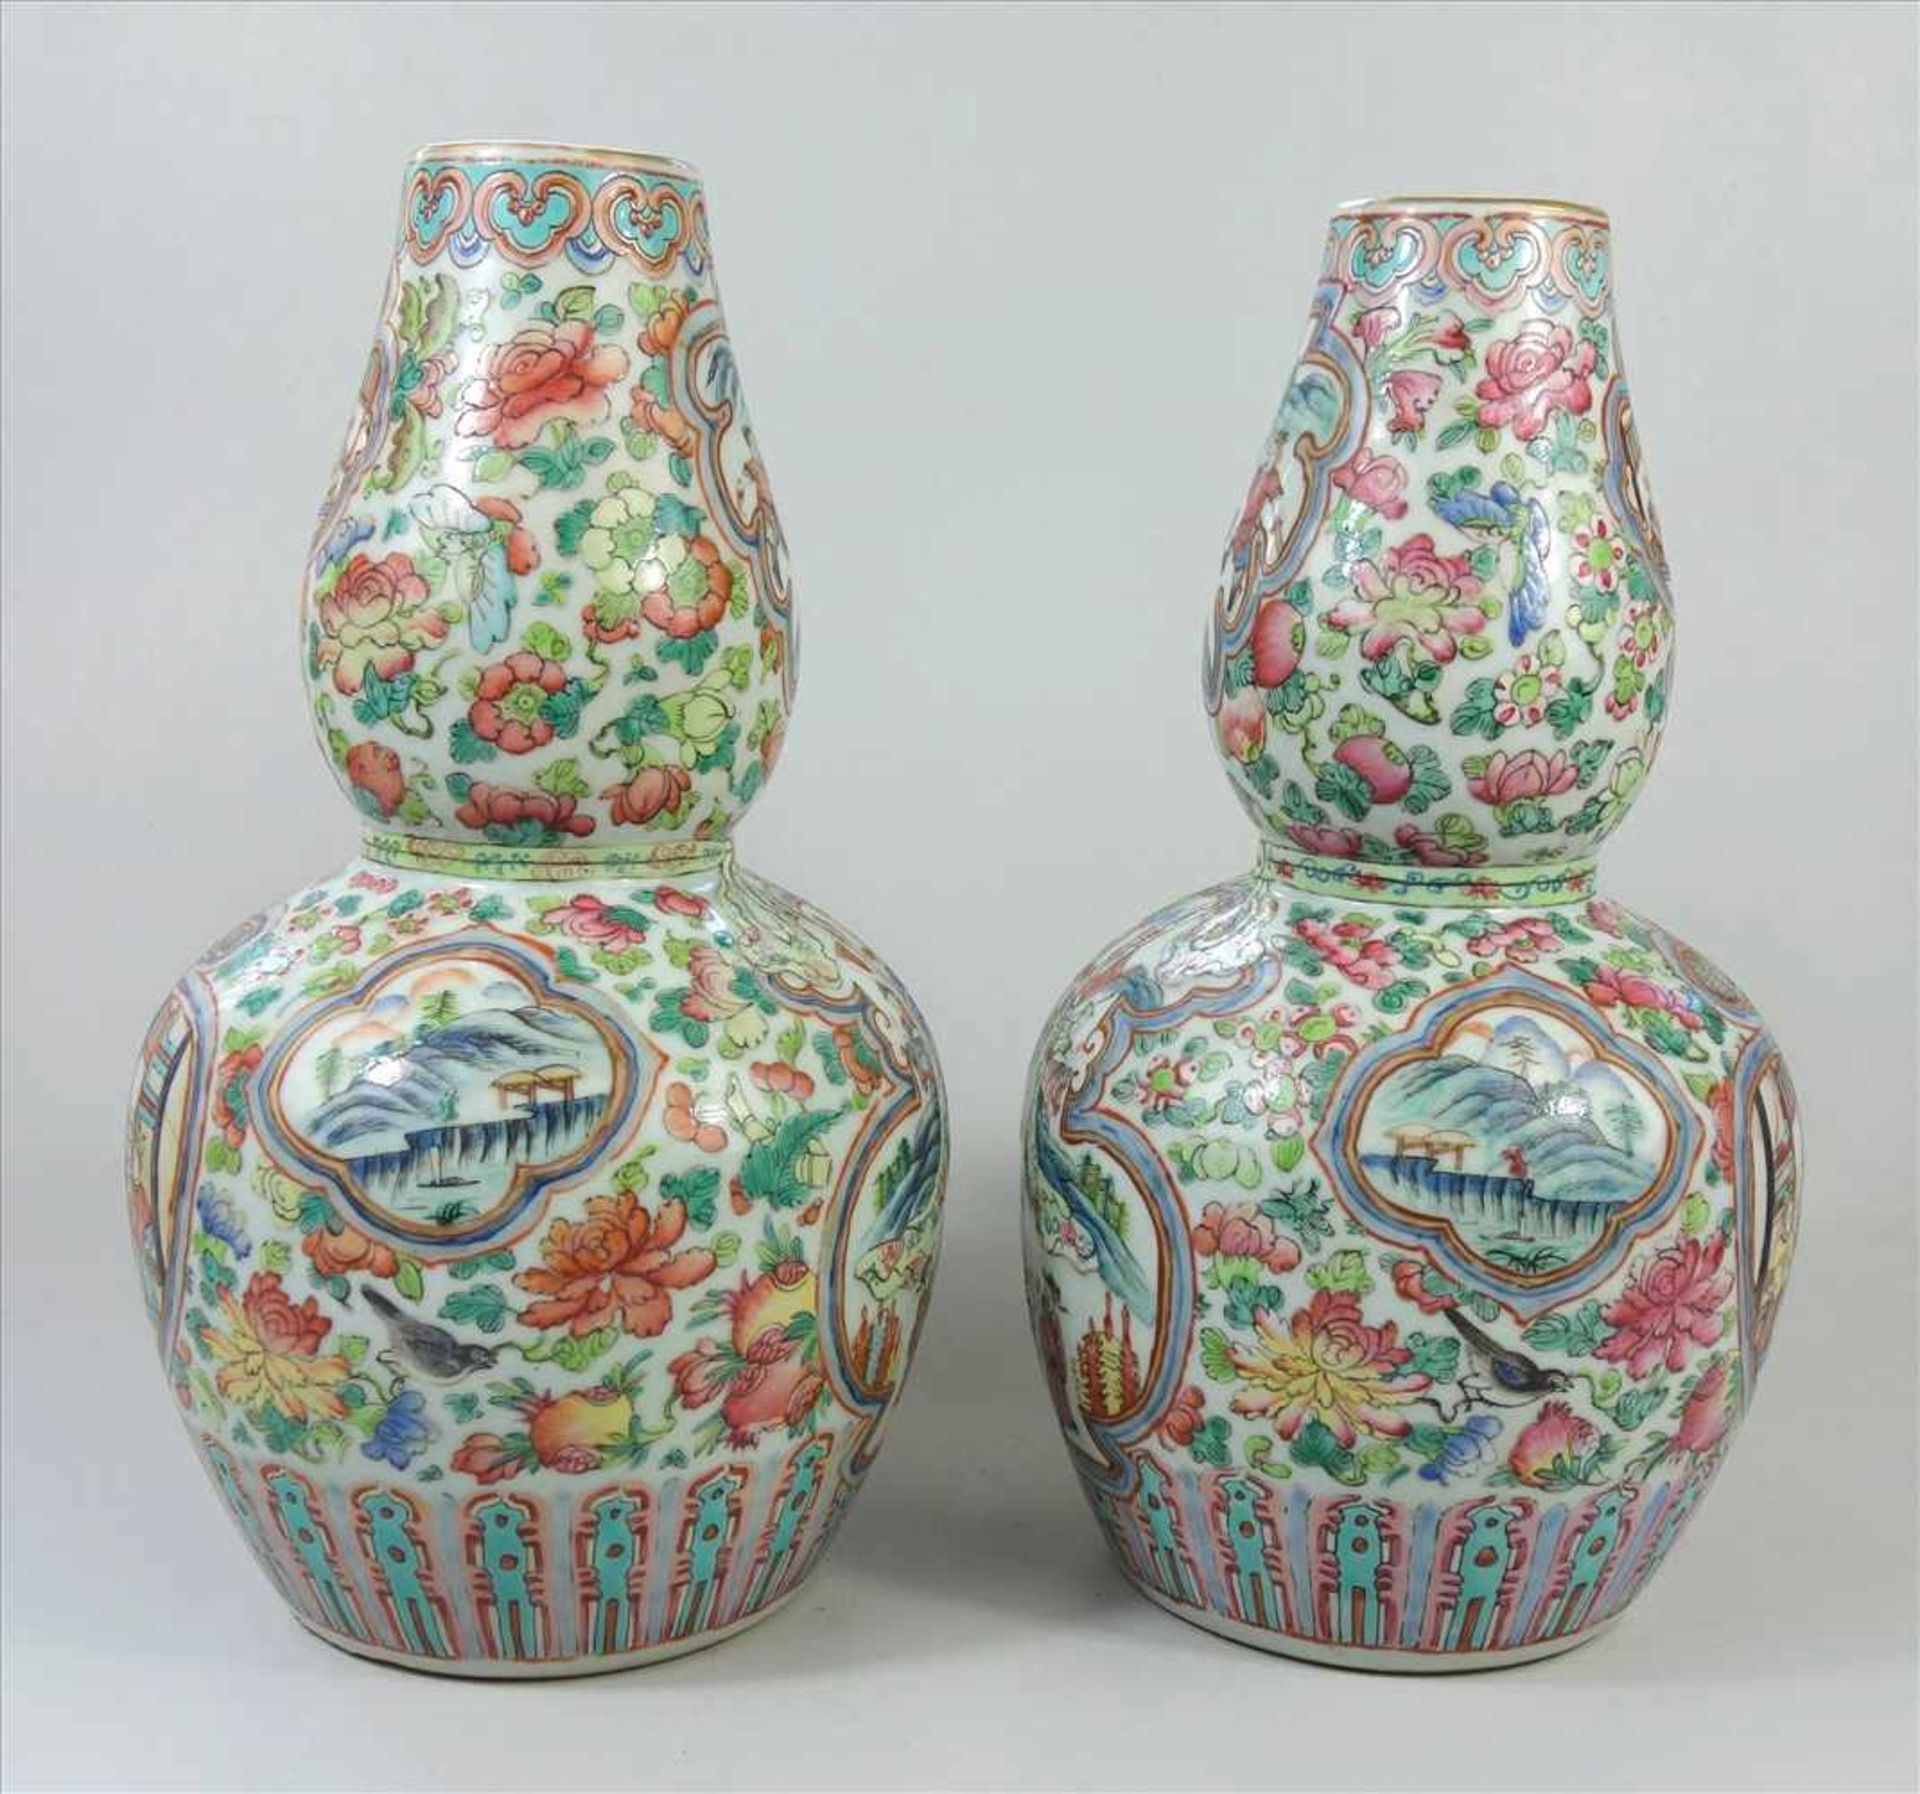 Paar Vasen, famille rose, China, 19. Jahrhundert, Kalebassen-Form, weißes Porzellan, umlaufend - Bild 4 aus 5